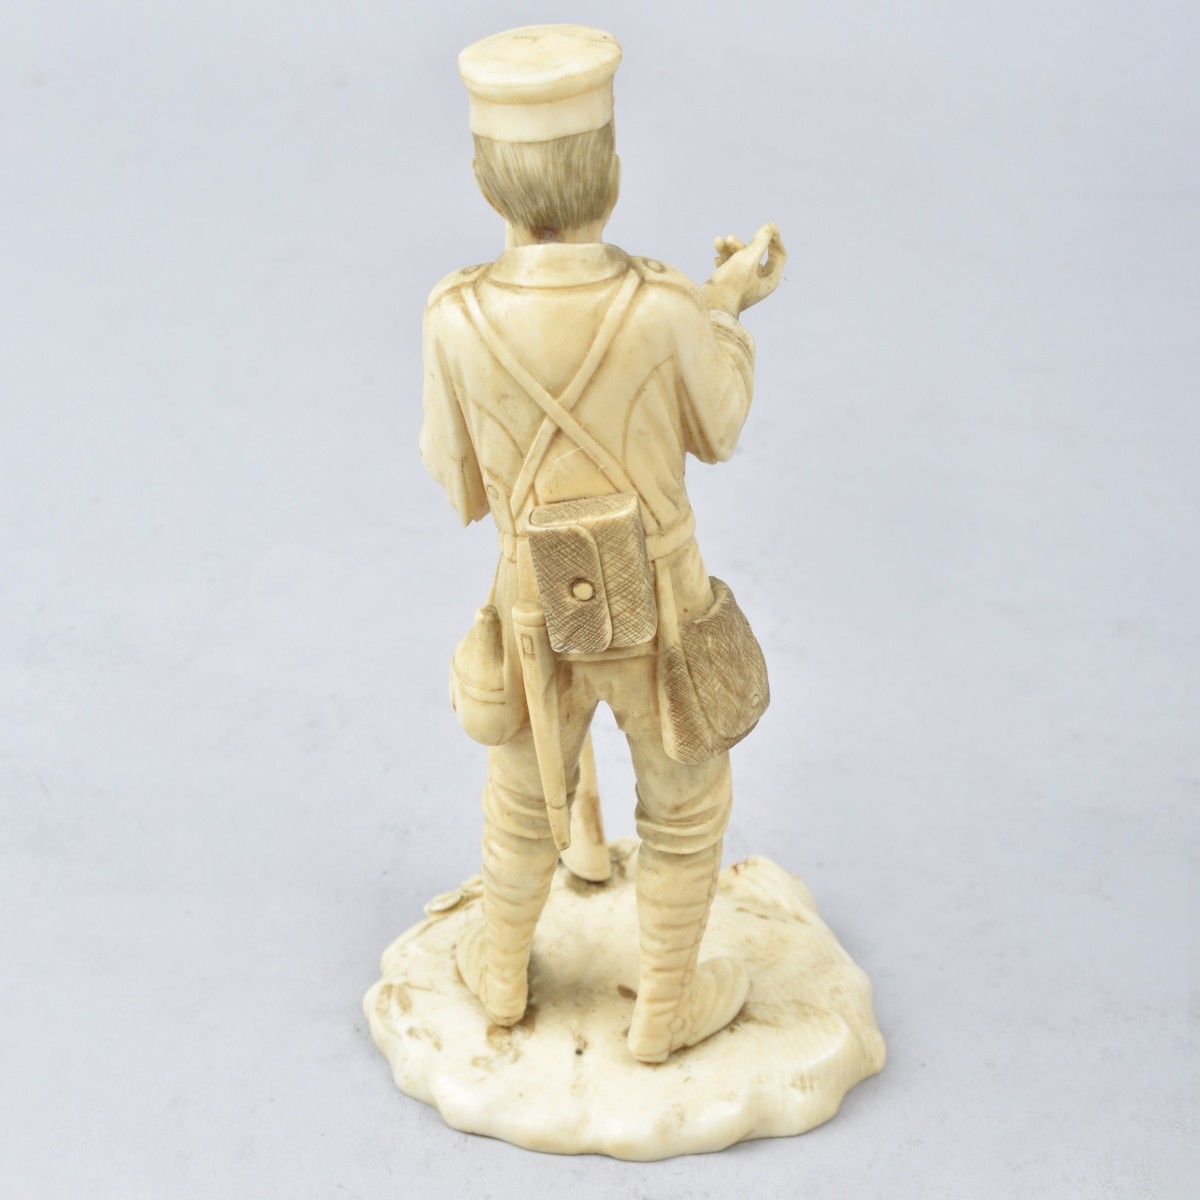 Antique Japanese Soldier Figurine